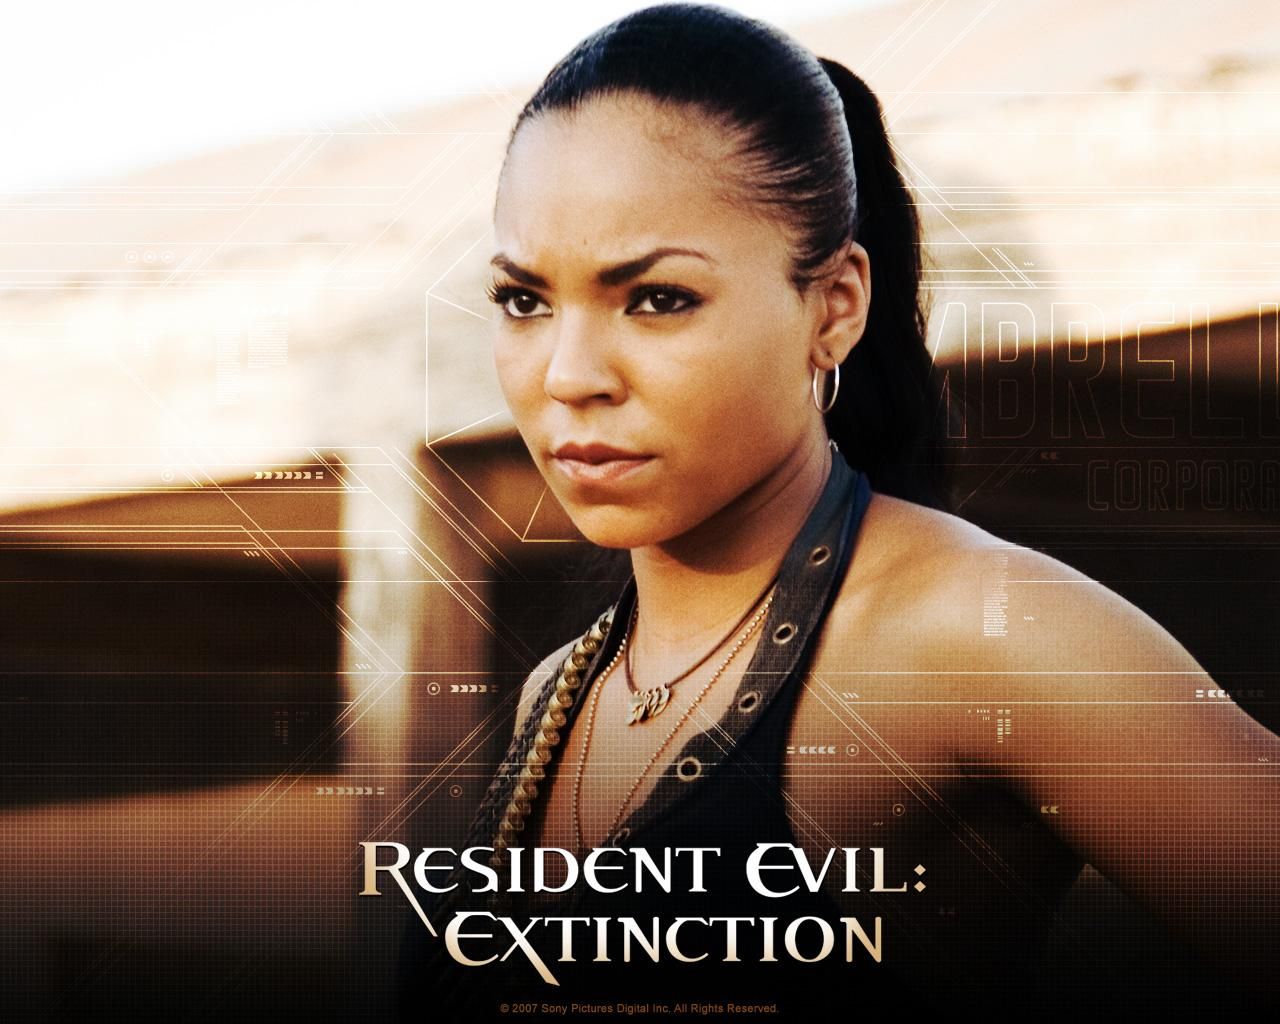 Фильм Обитель зла 3 | Resident Evil: Extinction - лучшие обои для рабочего стола